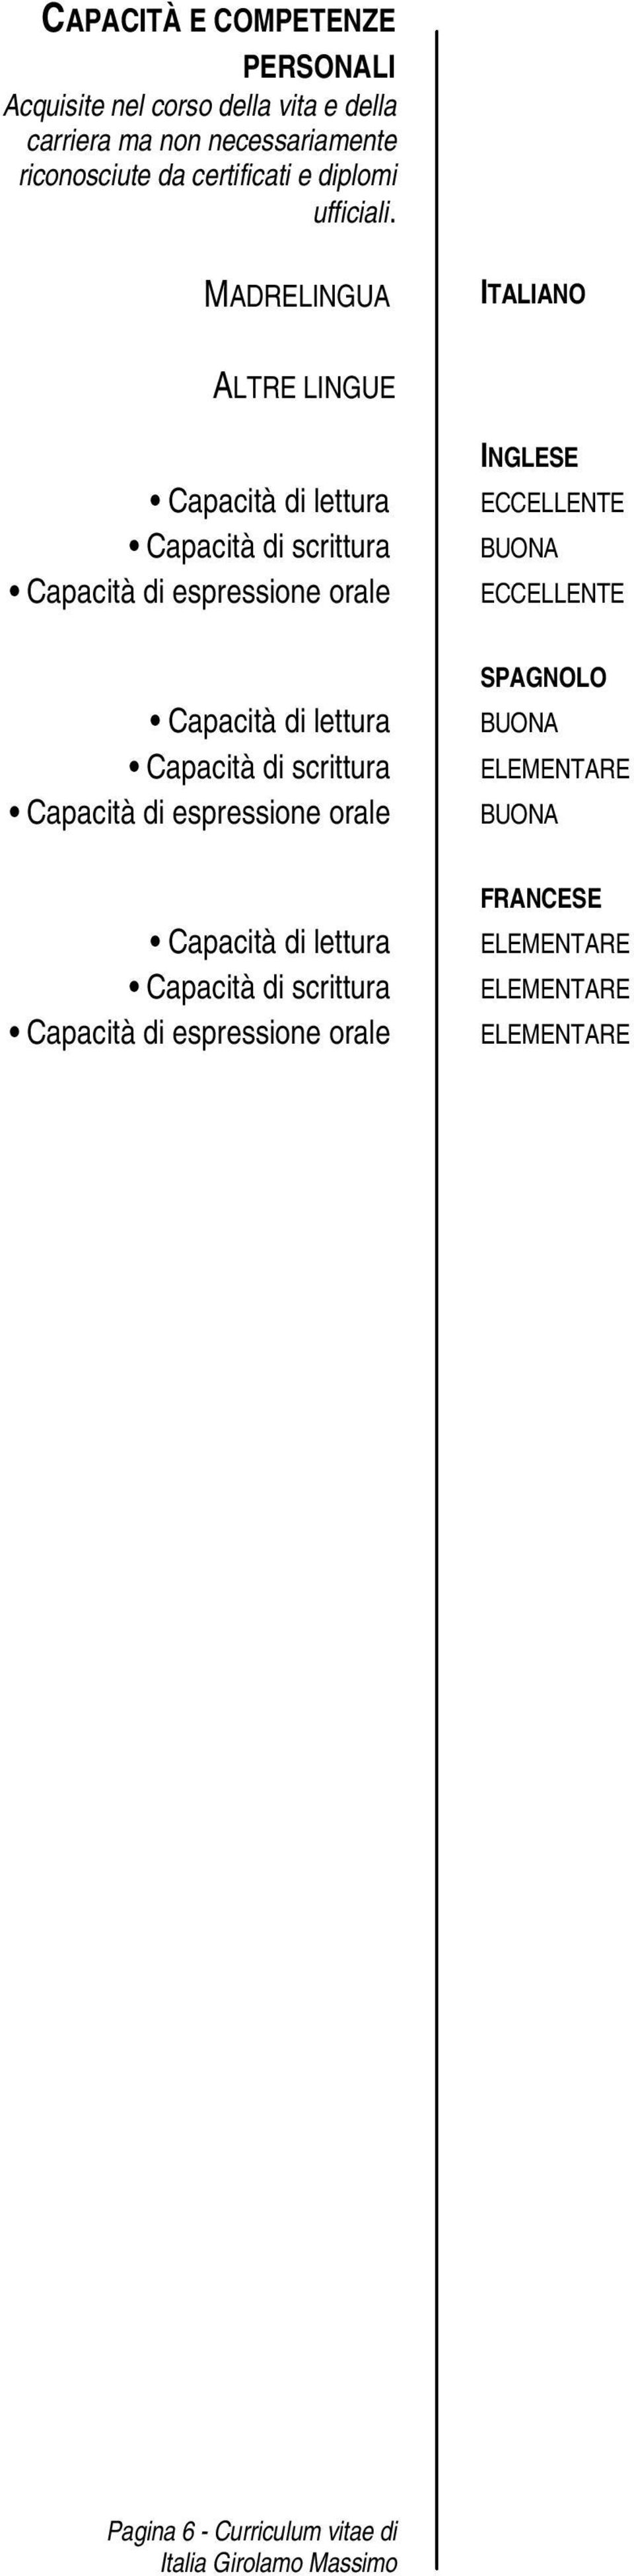 MADRELINGUA ITALIANO ALTRE LINGUE Capacità di lettura Capacità di scrittura Capacità di espressione orale INGLESE ECCELLENTE